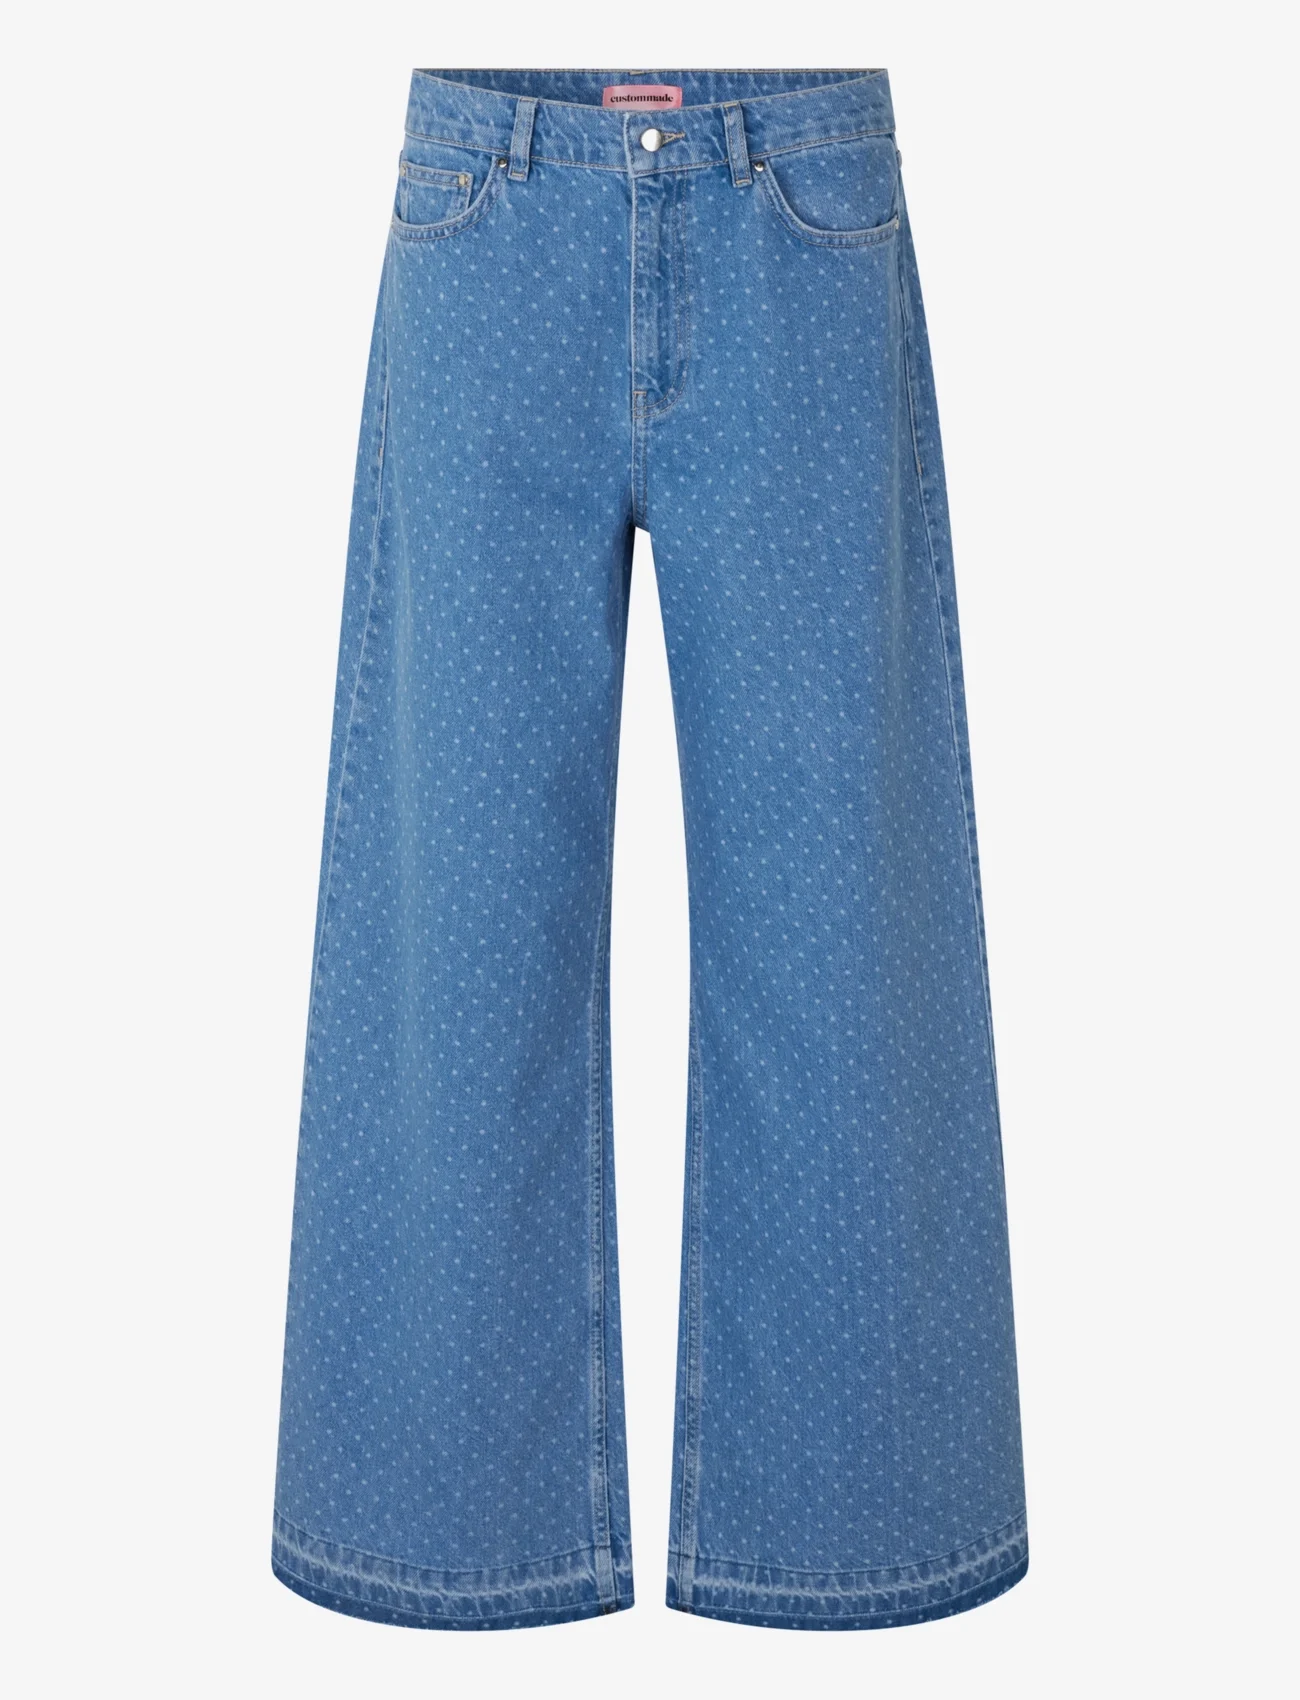 Custommade - Oteca Dots - vide jeans - 414 dusty blue - 0